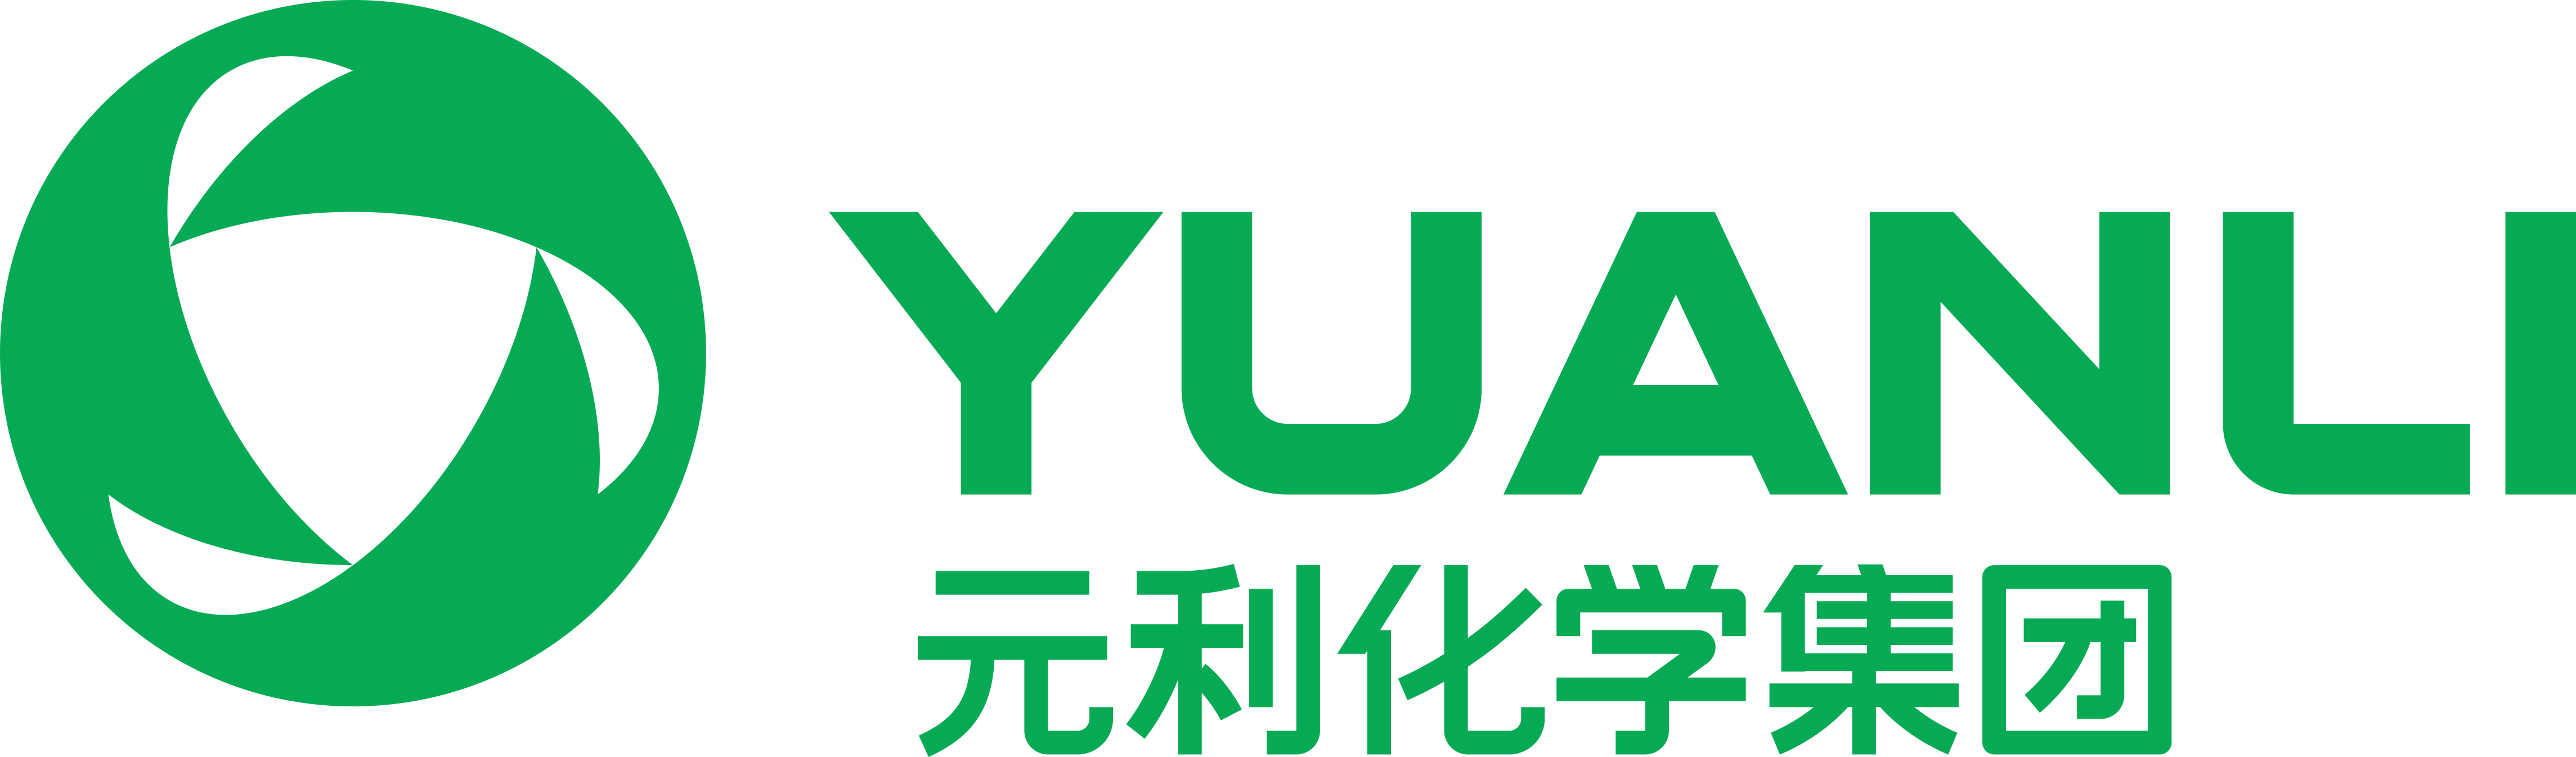 尊龙凯时logo